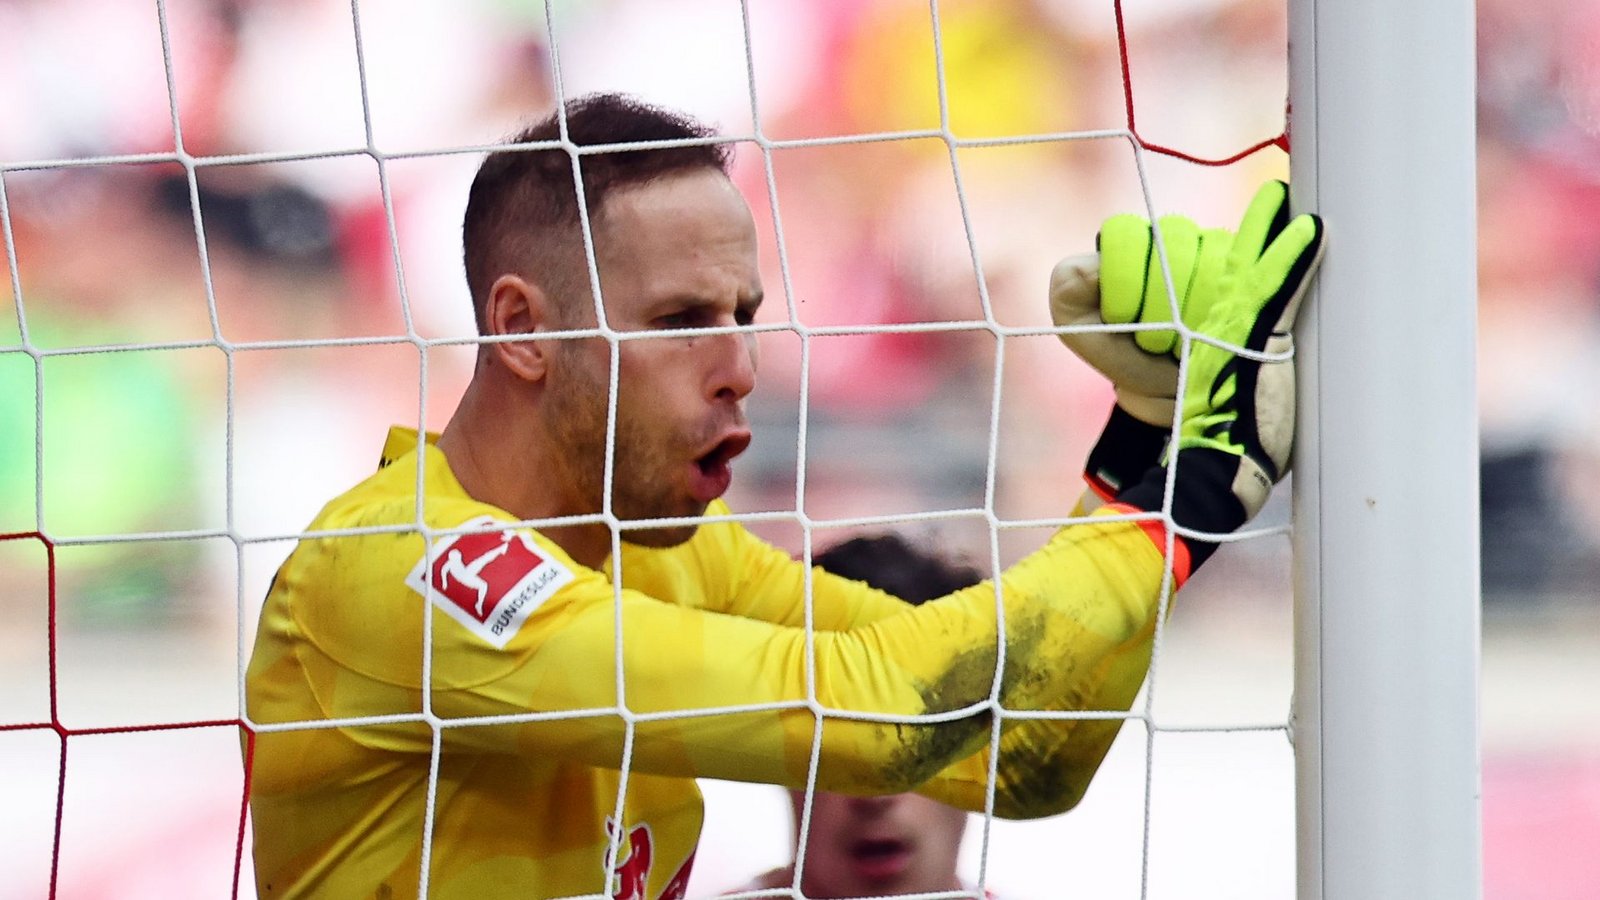 Leipzigs Torhüter Peter Gulacsi zeigte eine starke Leistung gegen Dortmund.Foto: Jan Woitas/dpa